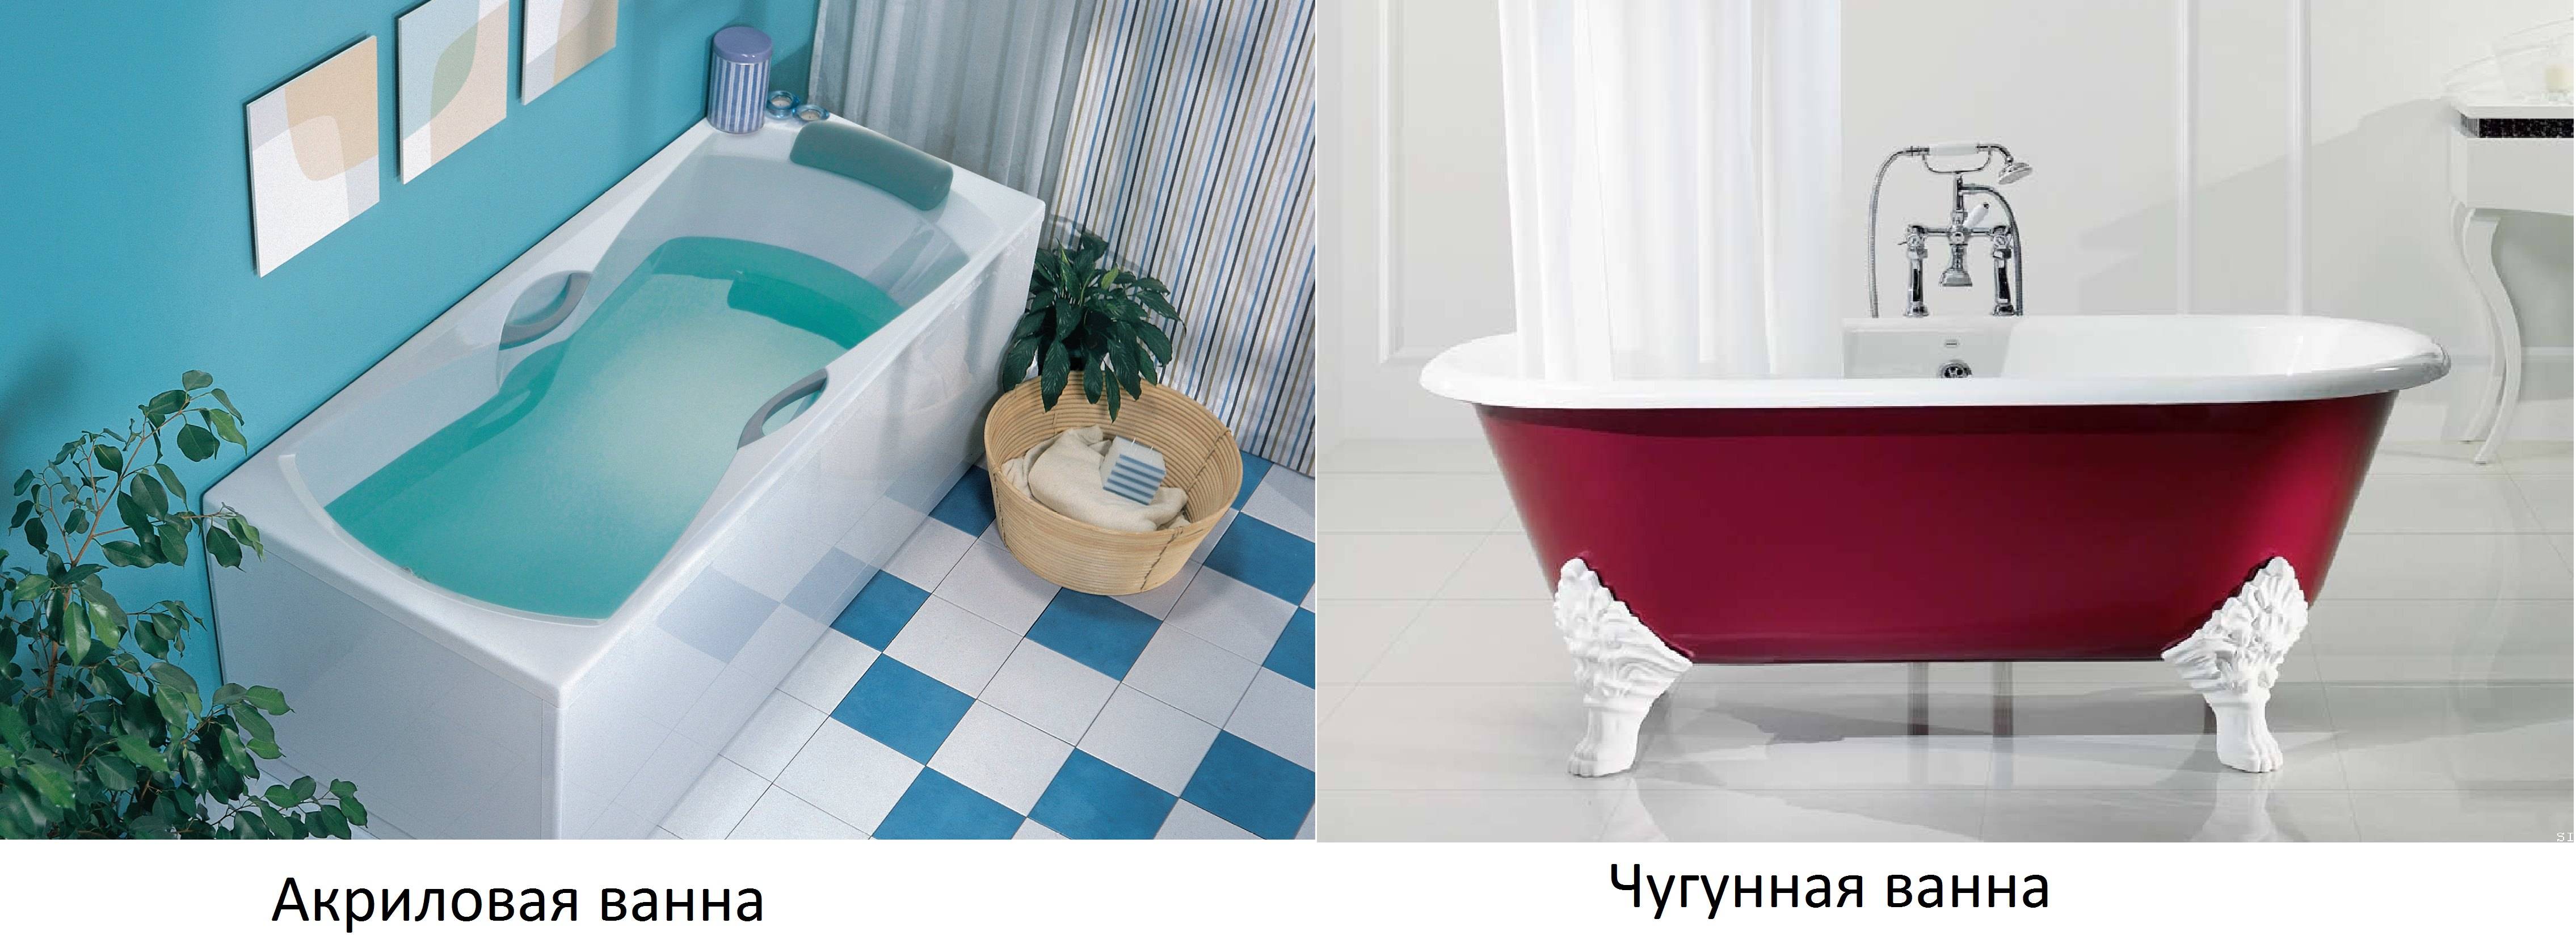 Как и какую выбрать ванну: какая ванна лучше и почему? (+ фото)